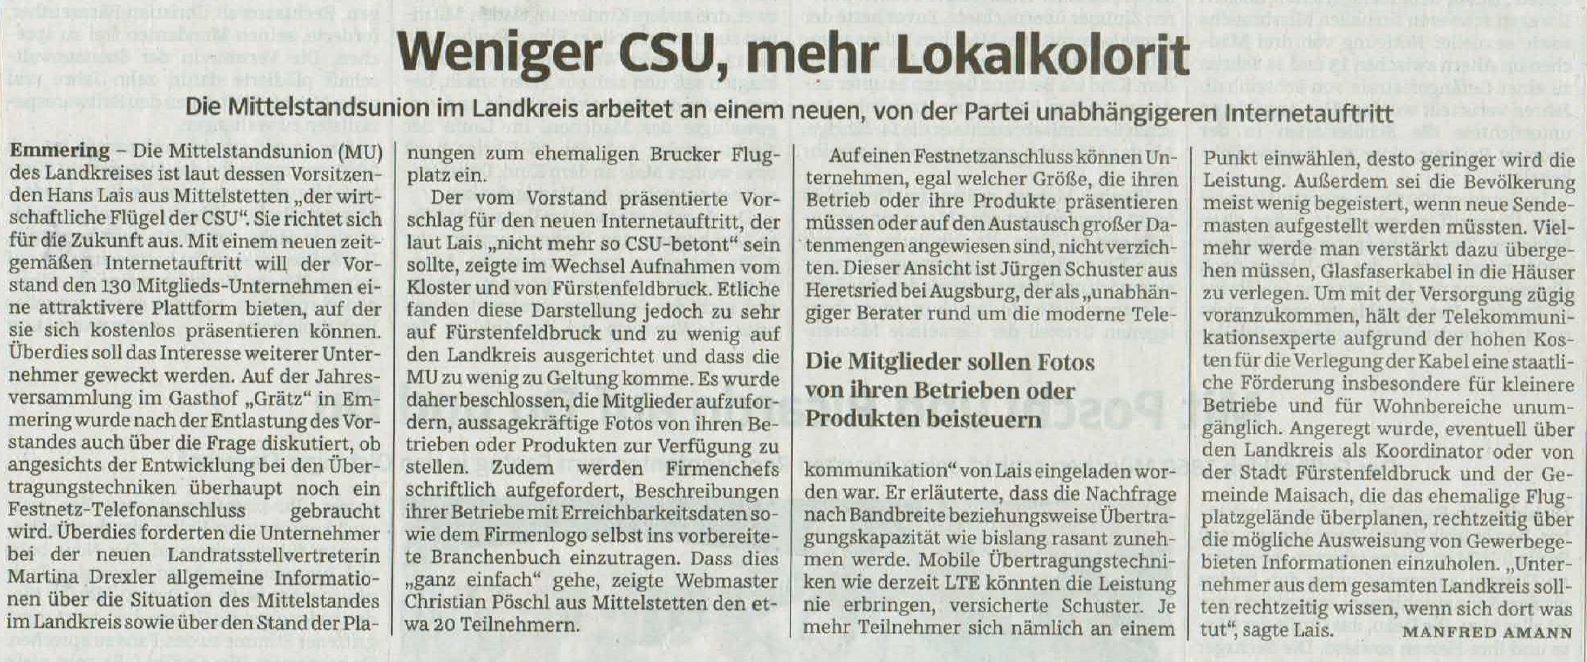 Pressebericht vom 1.7.2014 in der Süddeutschen Zeitung (Manfred Amann)